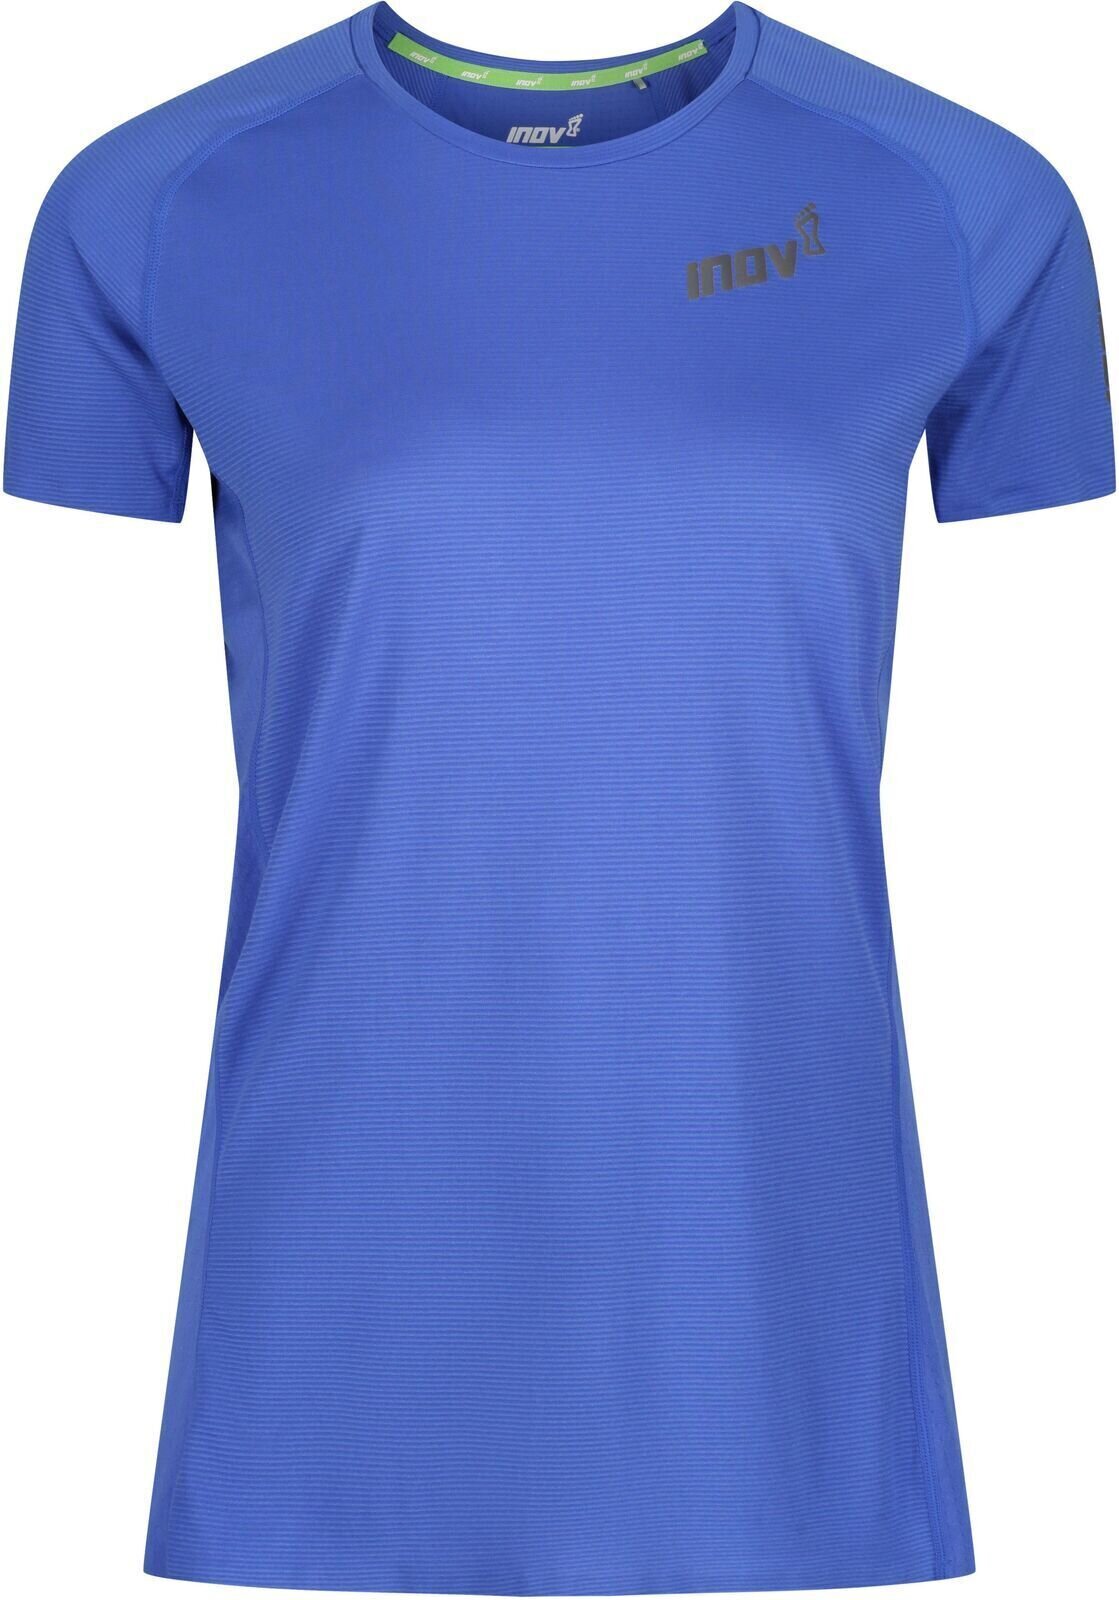 Tekaška majica s kratkim rokavom
 Inov-8 Baso Elite Blue 38 Tekaška majica s kratkim rokavom